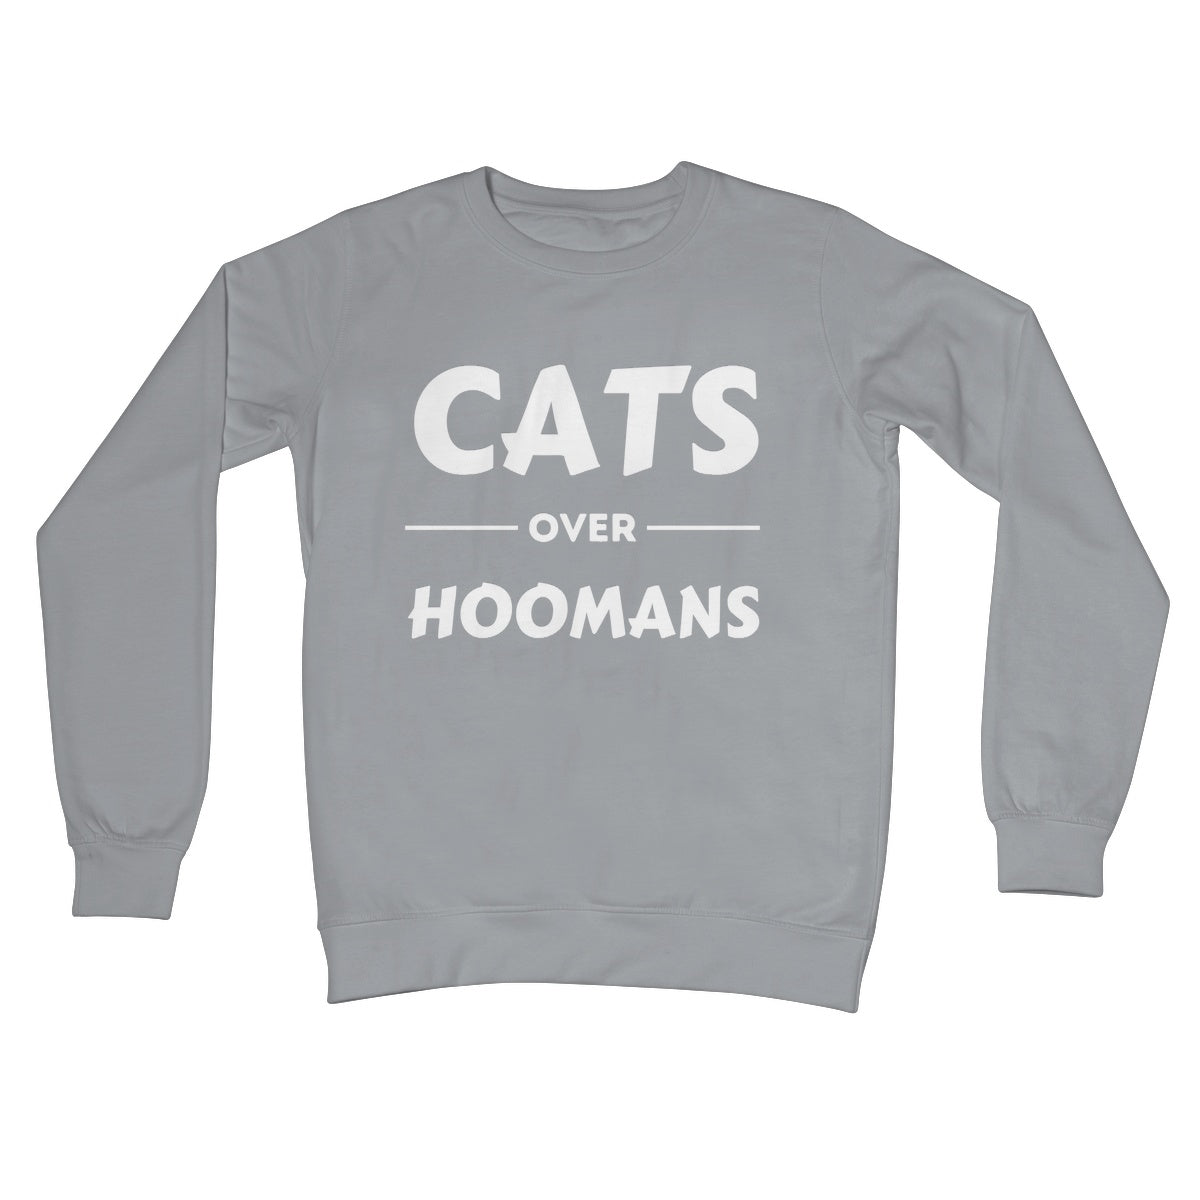 cats over hoomans jumper grey